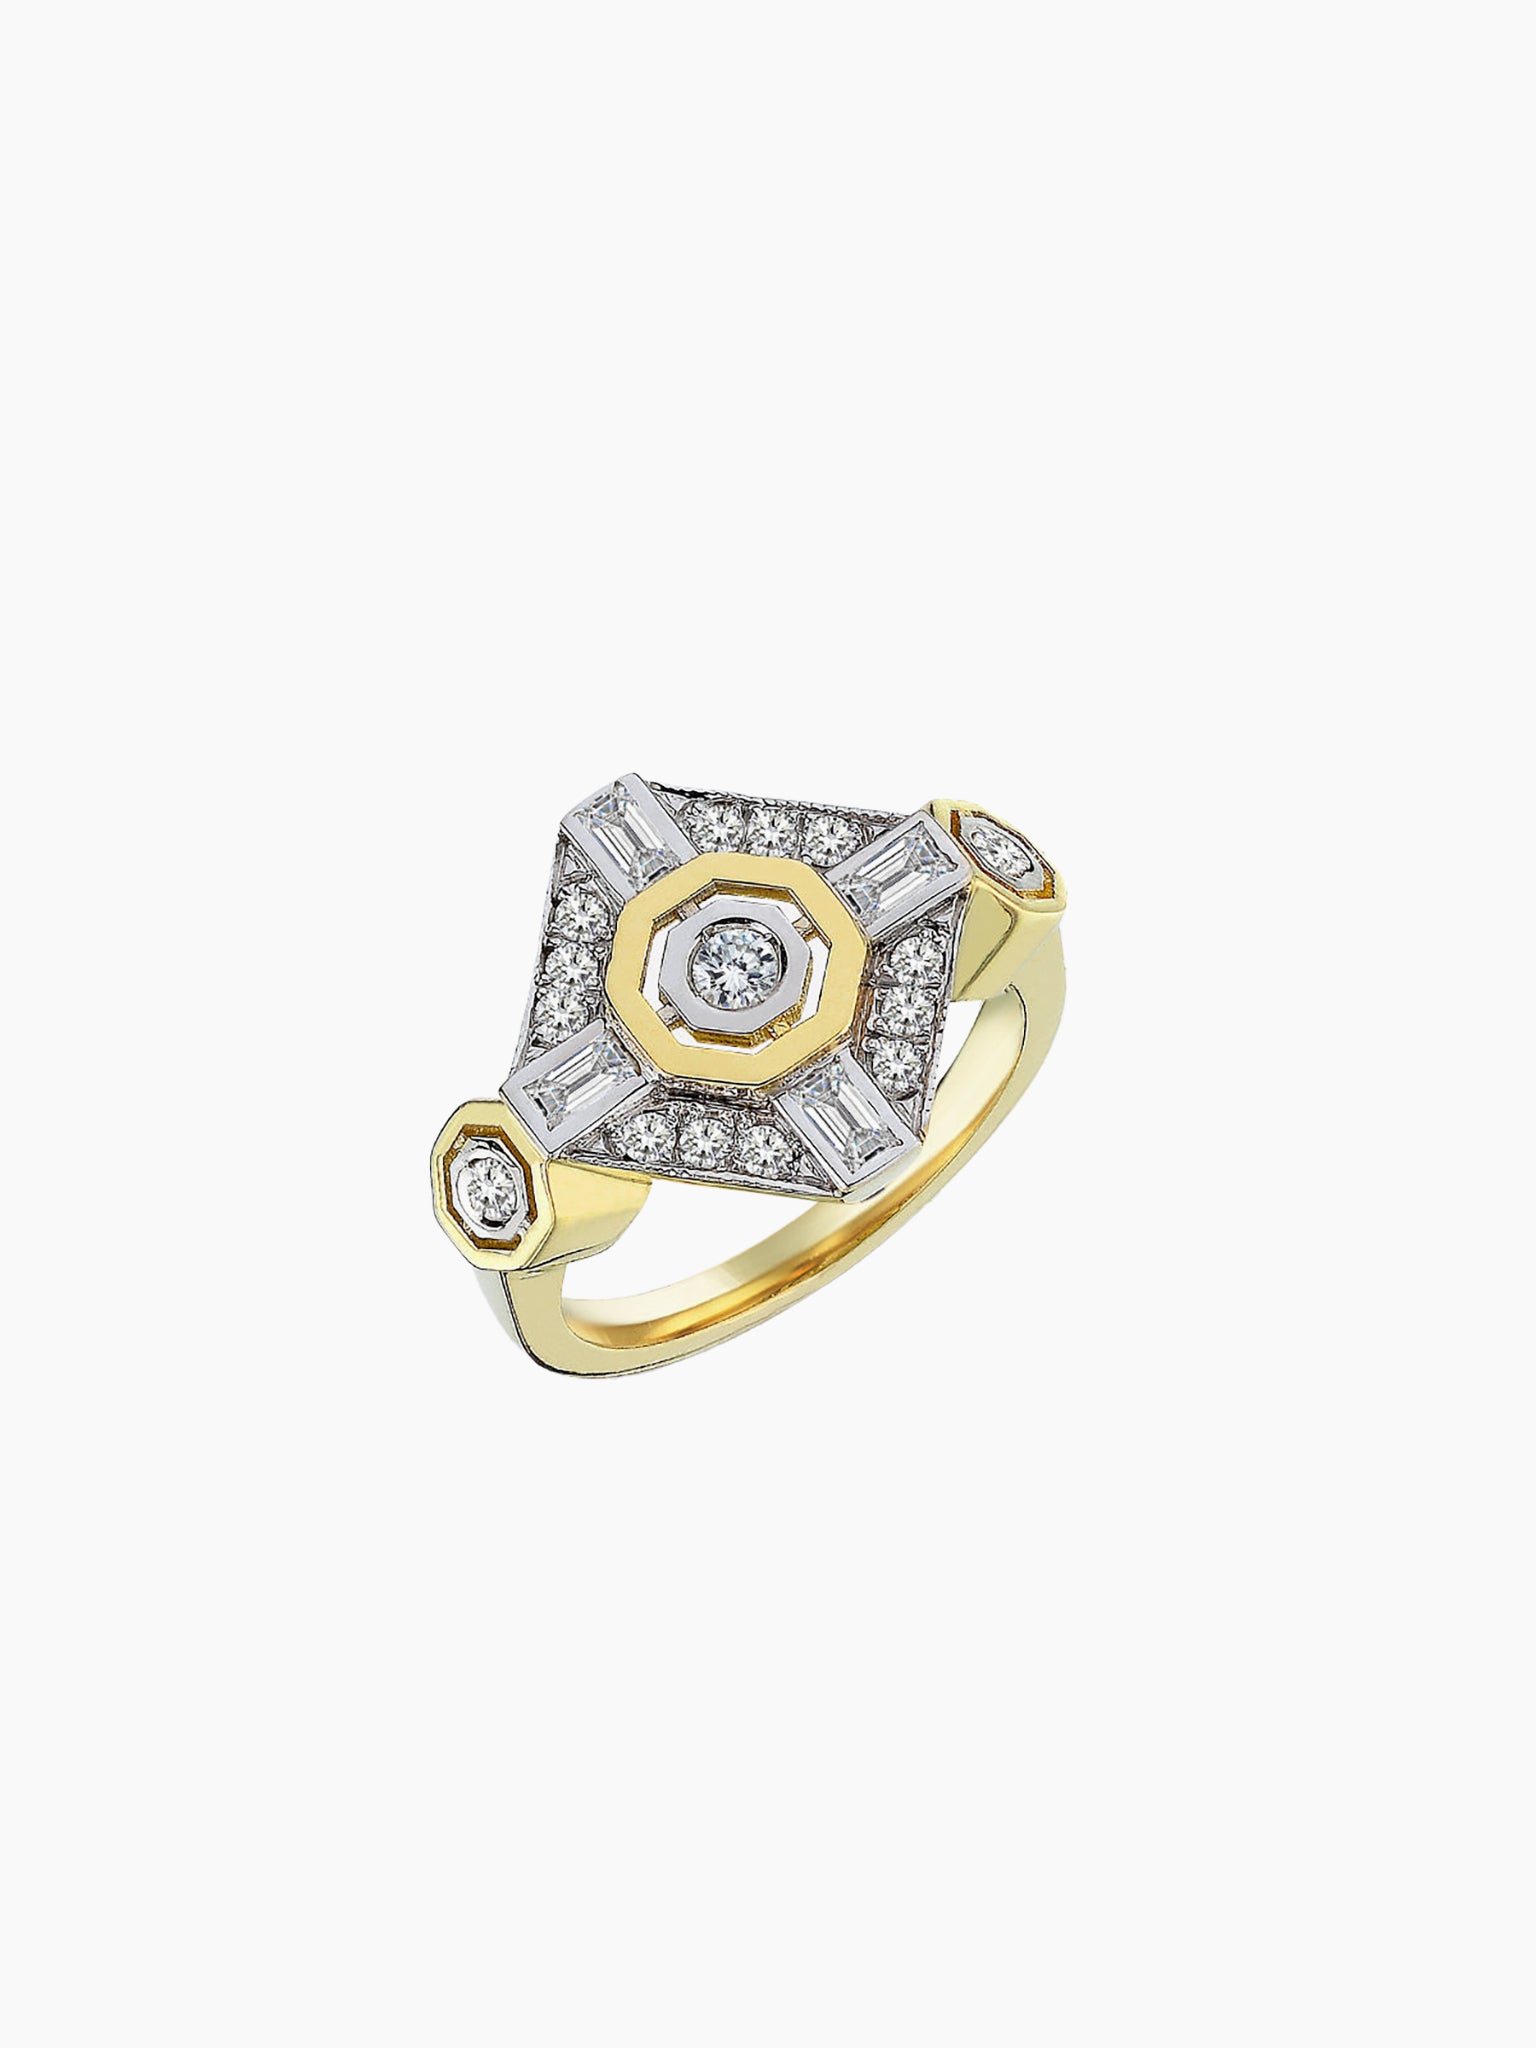 MELIS GORAL Focus Diamond Poly Ring